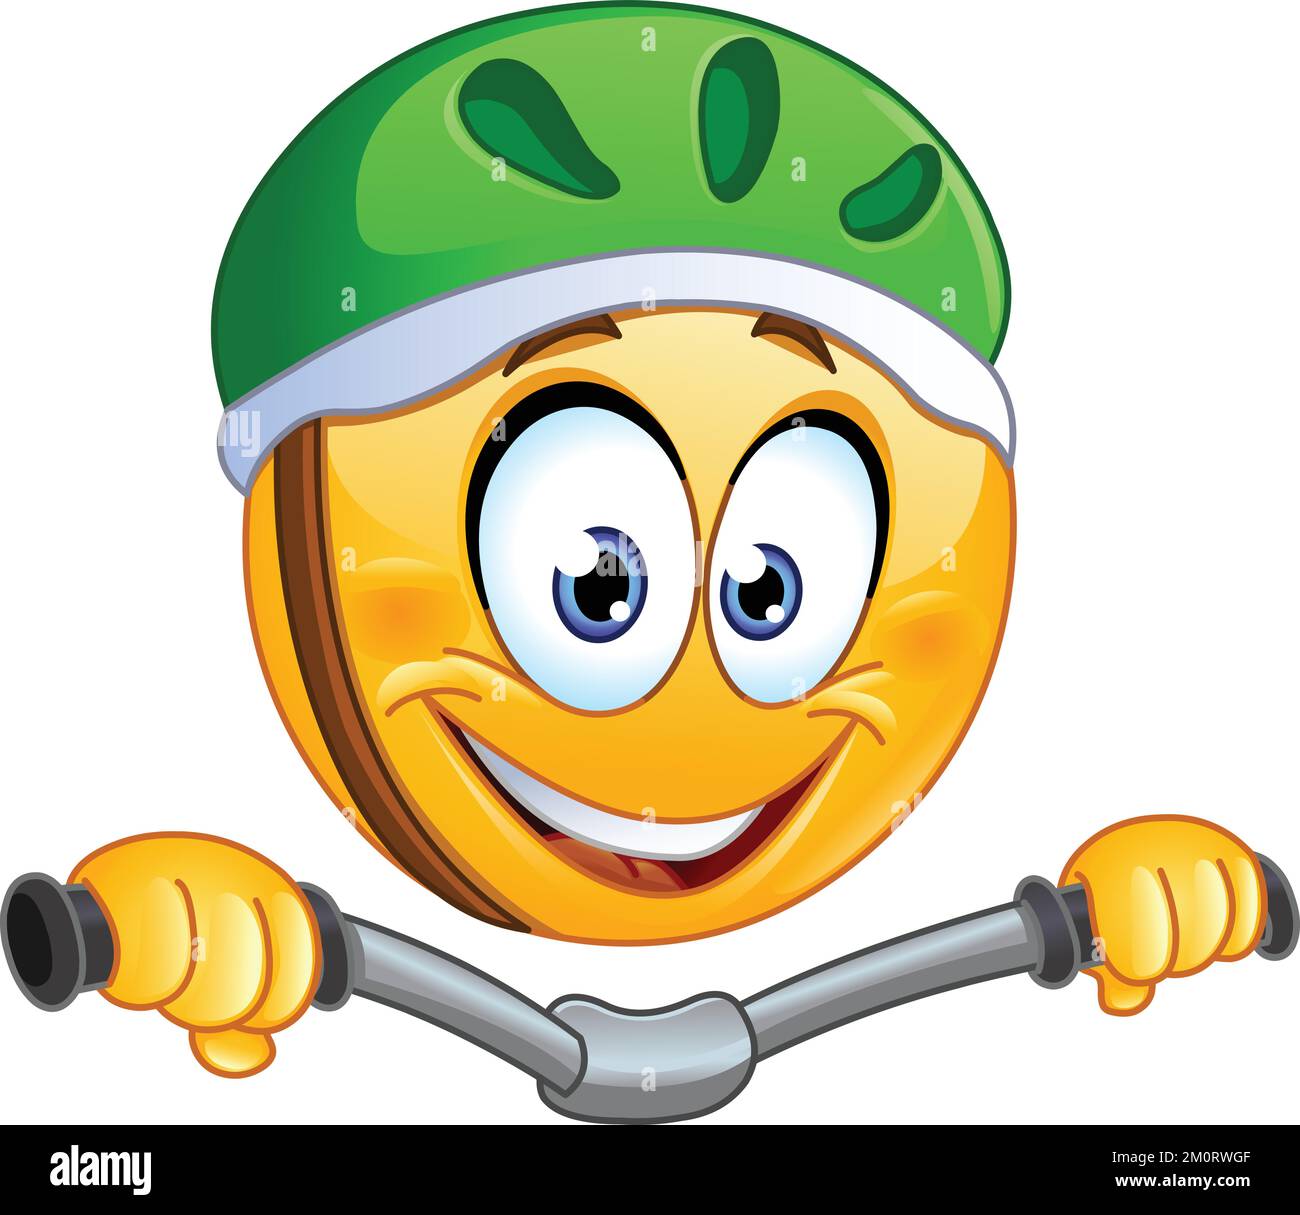 Fröhliches Emoji-Emoticon mit Helm und Fahrrad Stock Vektor